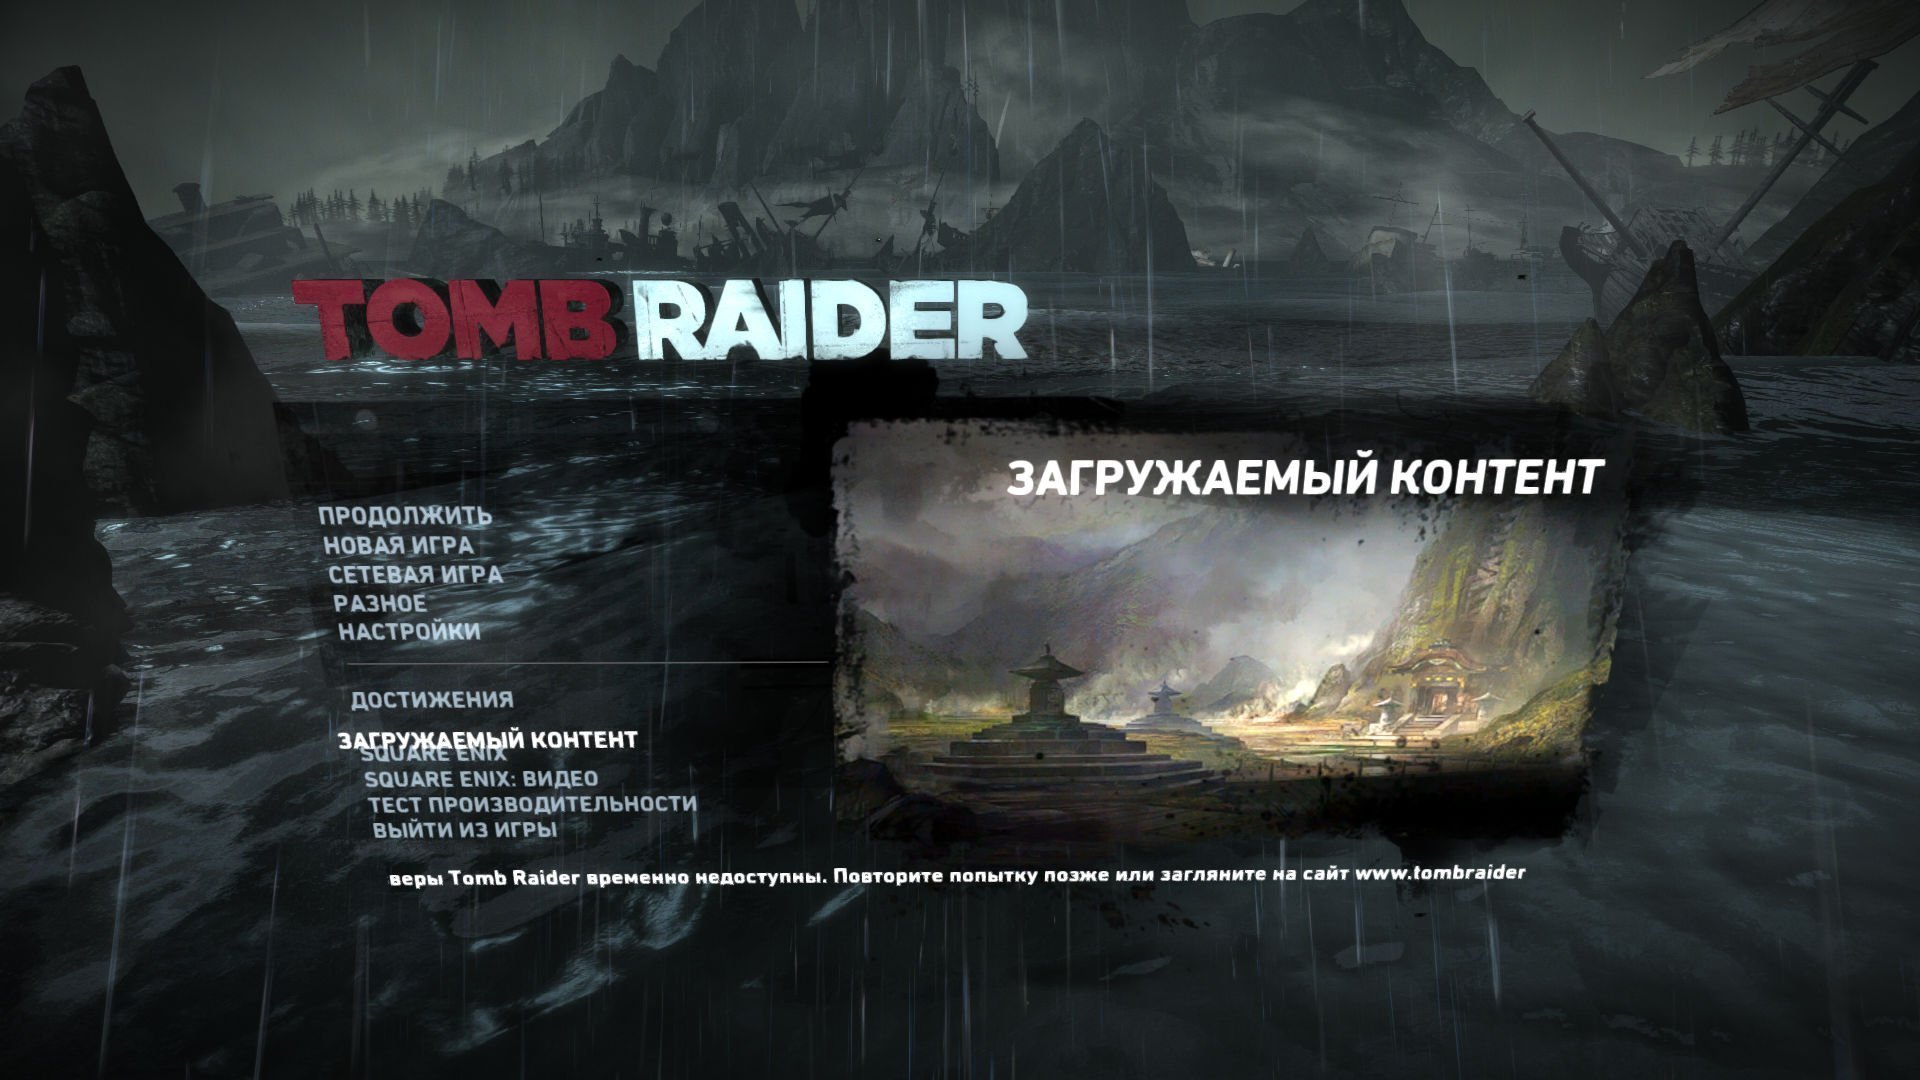 Продолжи новую игру. Tomb Raider 2013 главное меню. Меню игры в Tomb Raider 2013. Tomb Raider.Survival Edition_2013. The Tomb Raider. Game of the year Edition (2013).